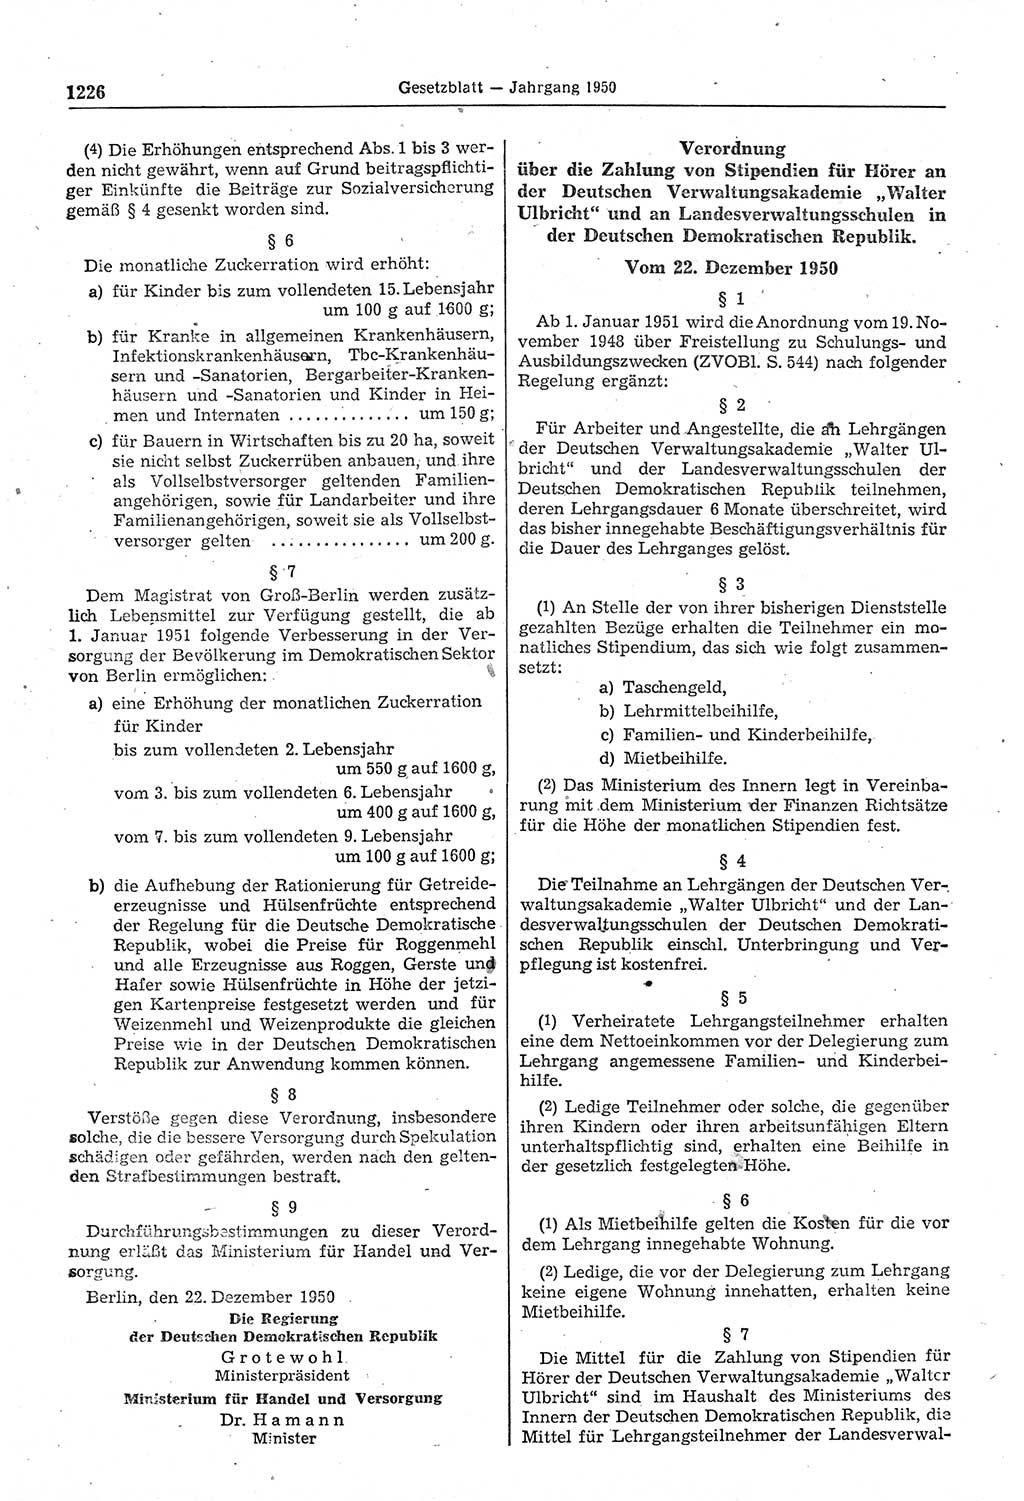 Gesetzblatt (GBl.) der Deutschen Demokratischen Republik (DDR) 1950, Seite 1226 (GBl. DDR 1950, S. 1226)